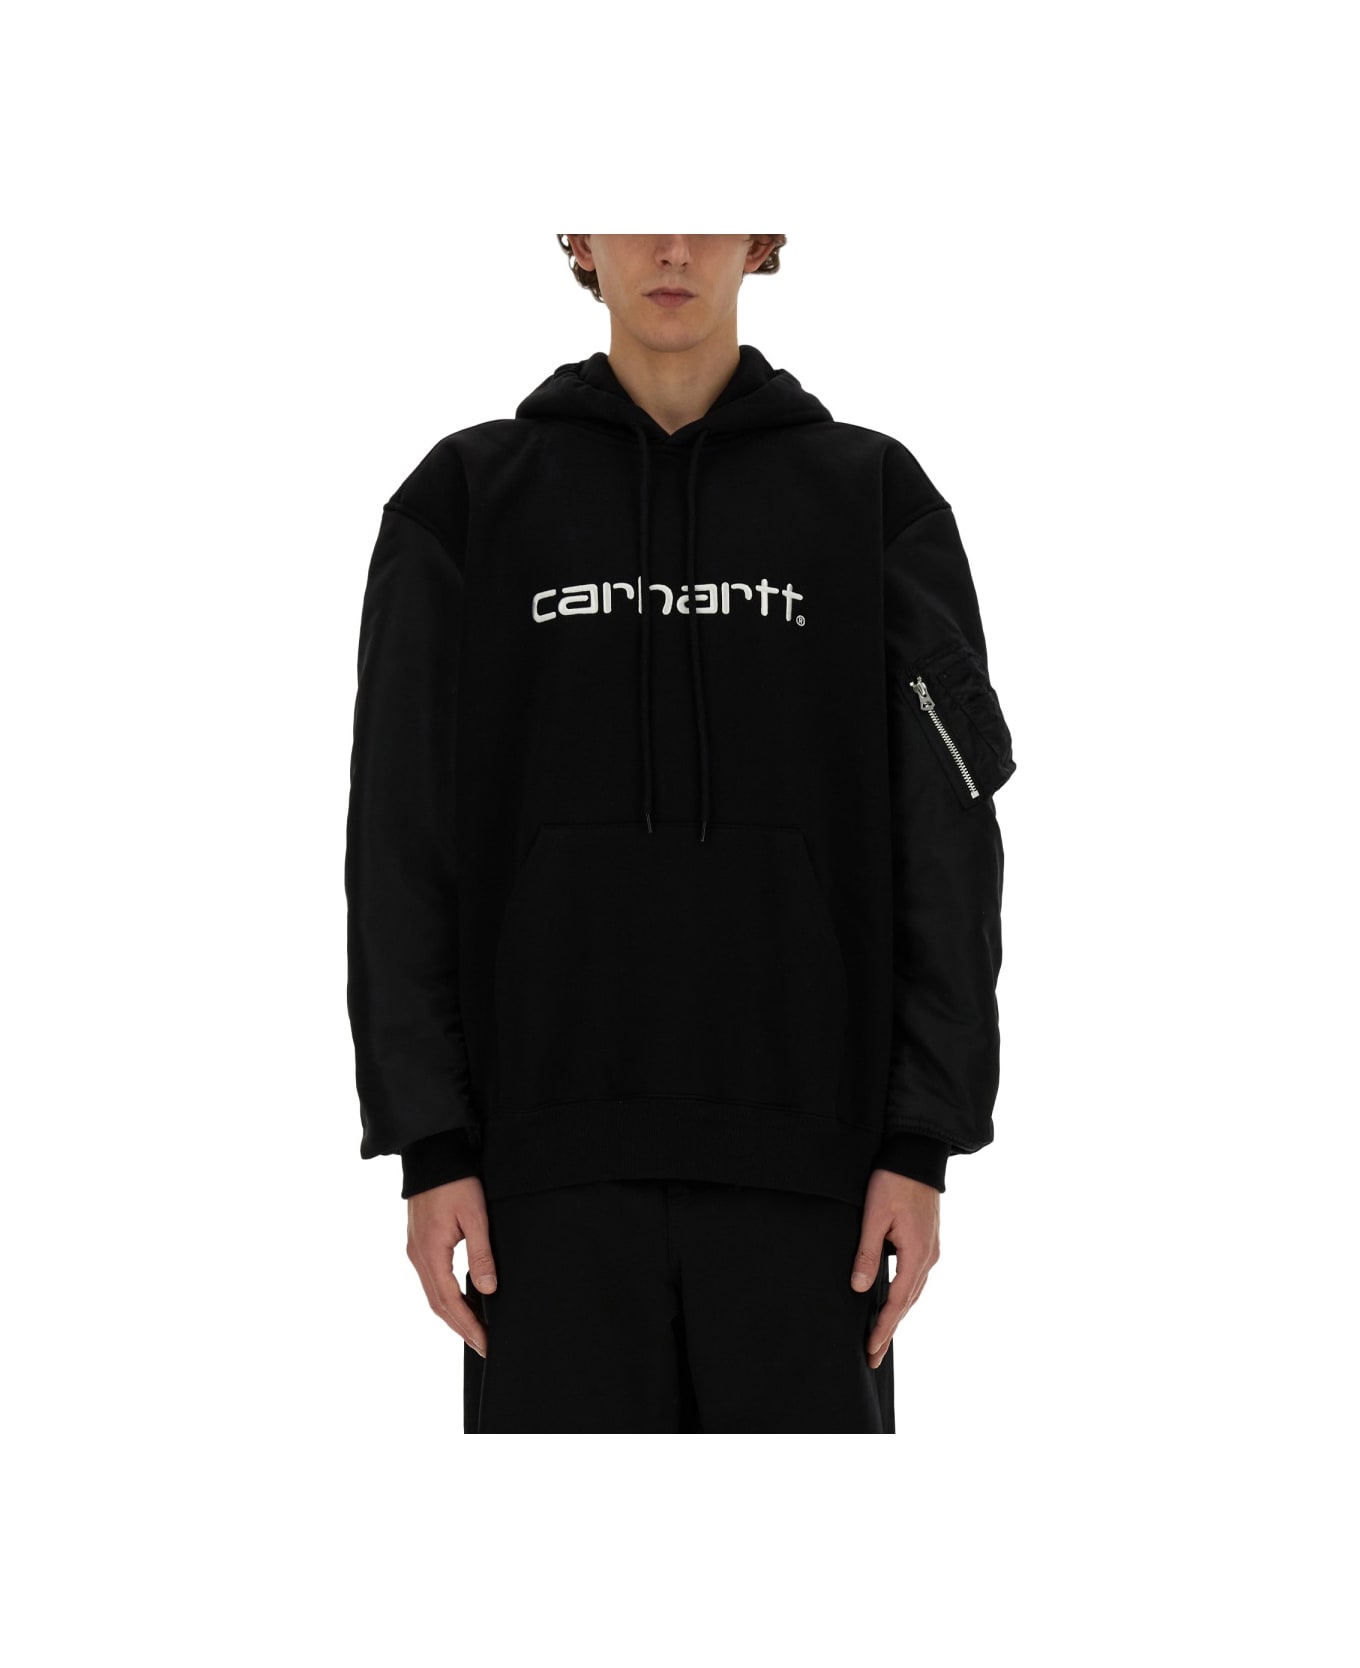 Junya Watanabe Man X Carhartt Sweatshirt - BLACK